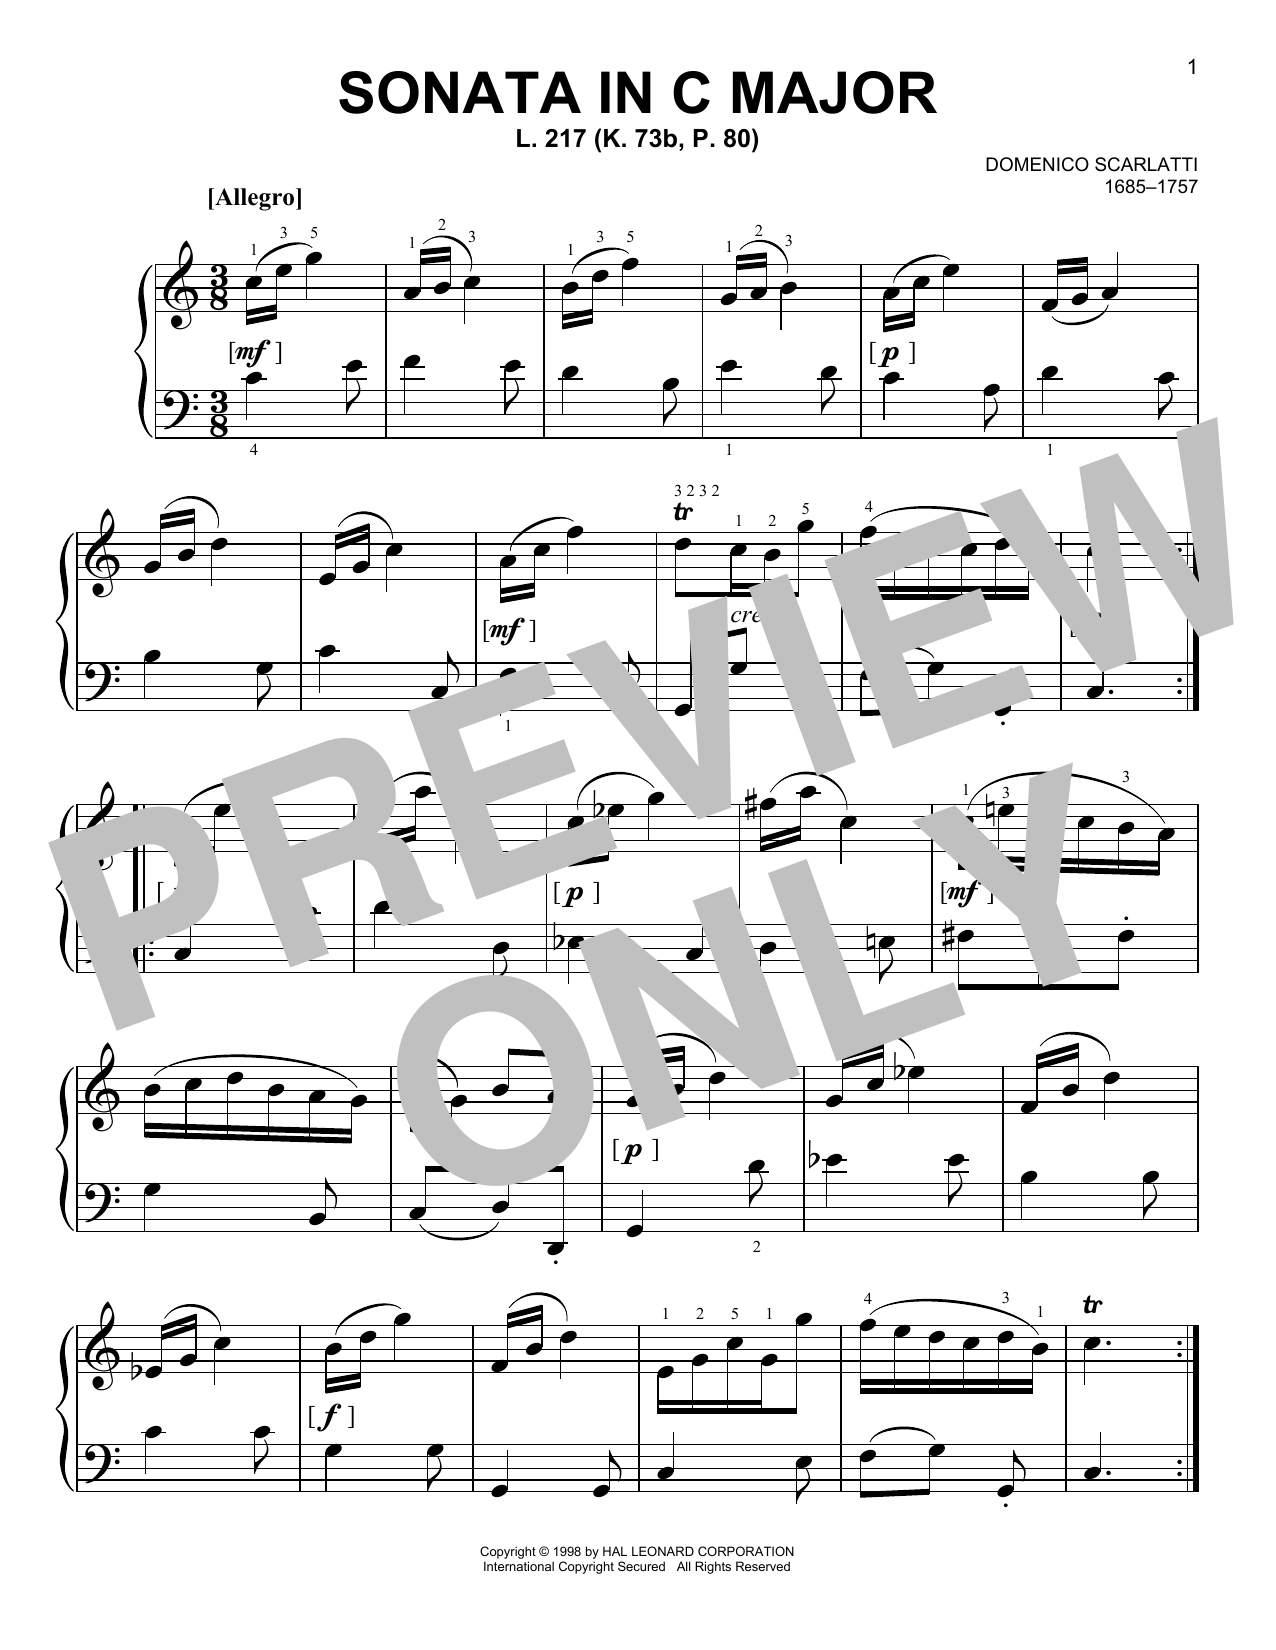 Download Domenico Scarlatti Sonata In C Major, L. 217 Sheet Music